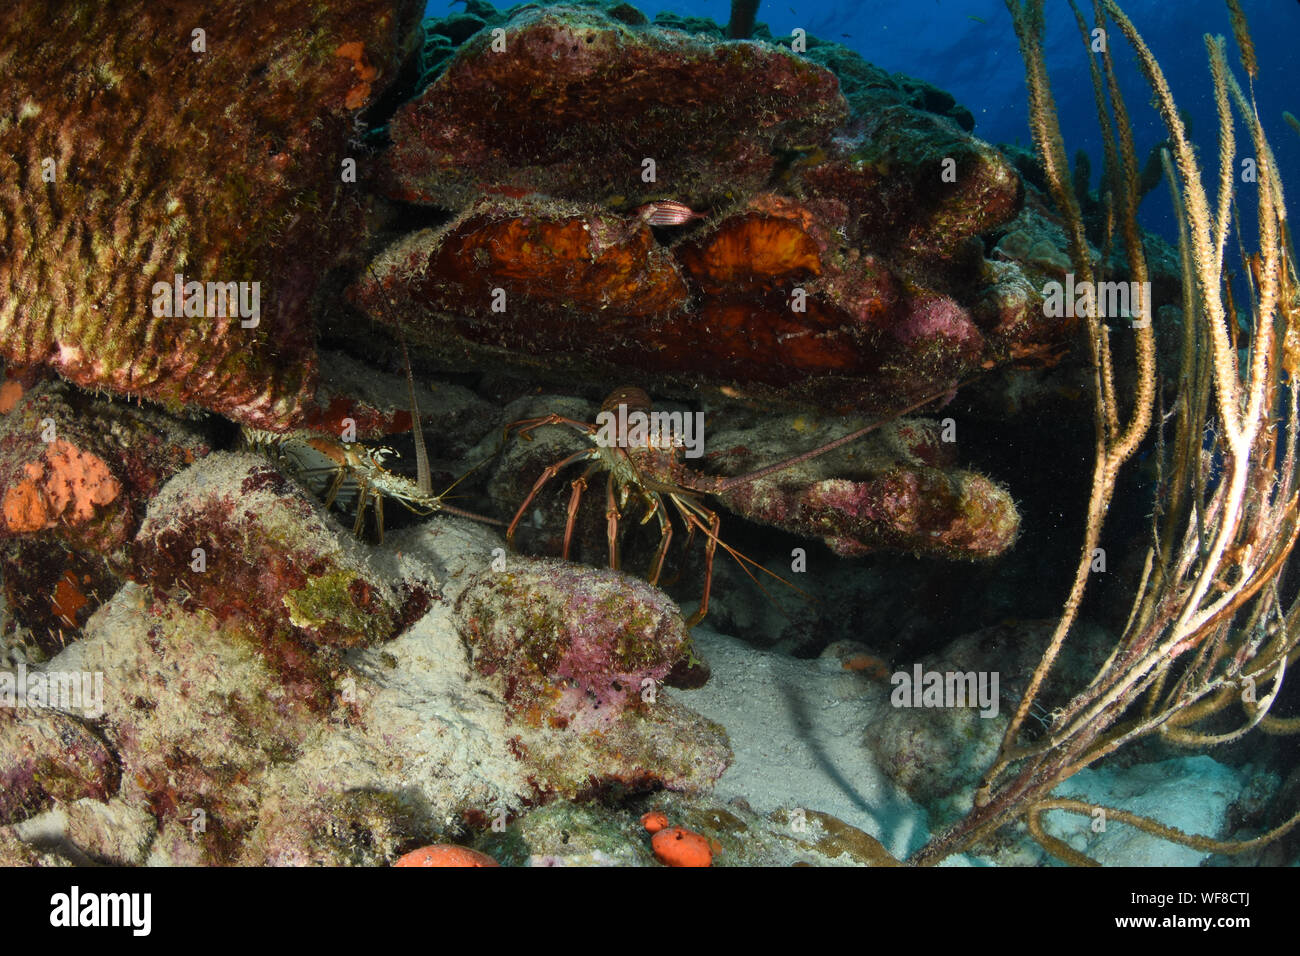 La langosta marina caribeña espinosa (Panulirus argus) habita en aguas tropicales y subtropicales del Océano Atlántico, Mar Caribe, Foto de stock